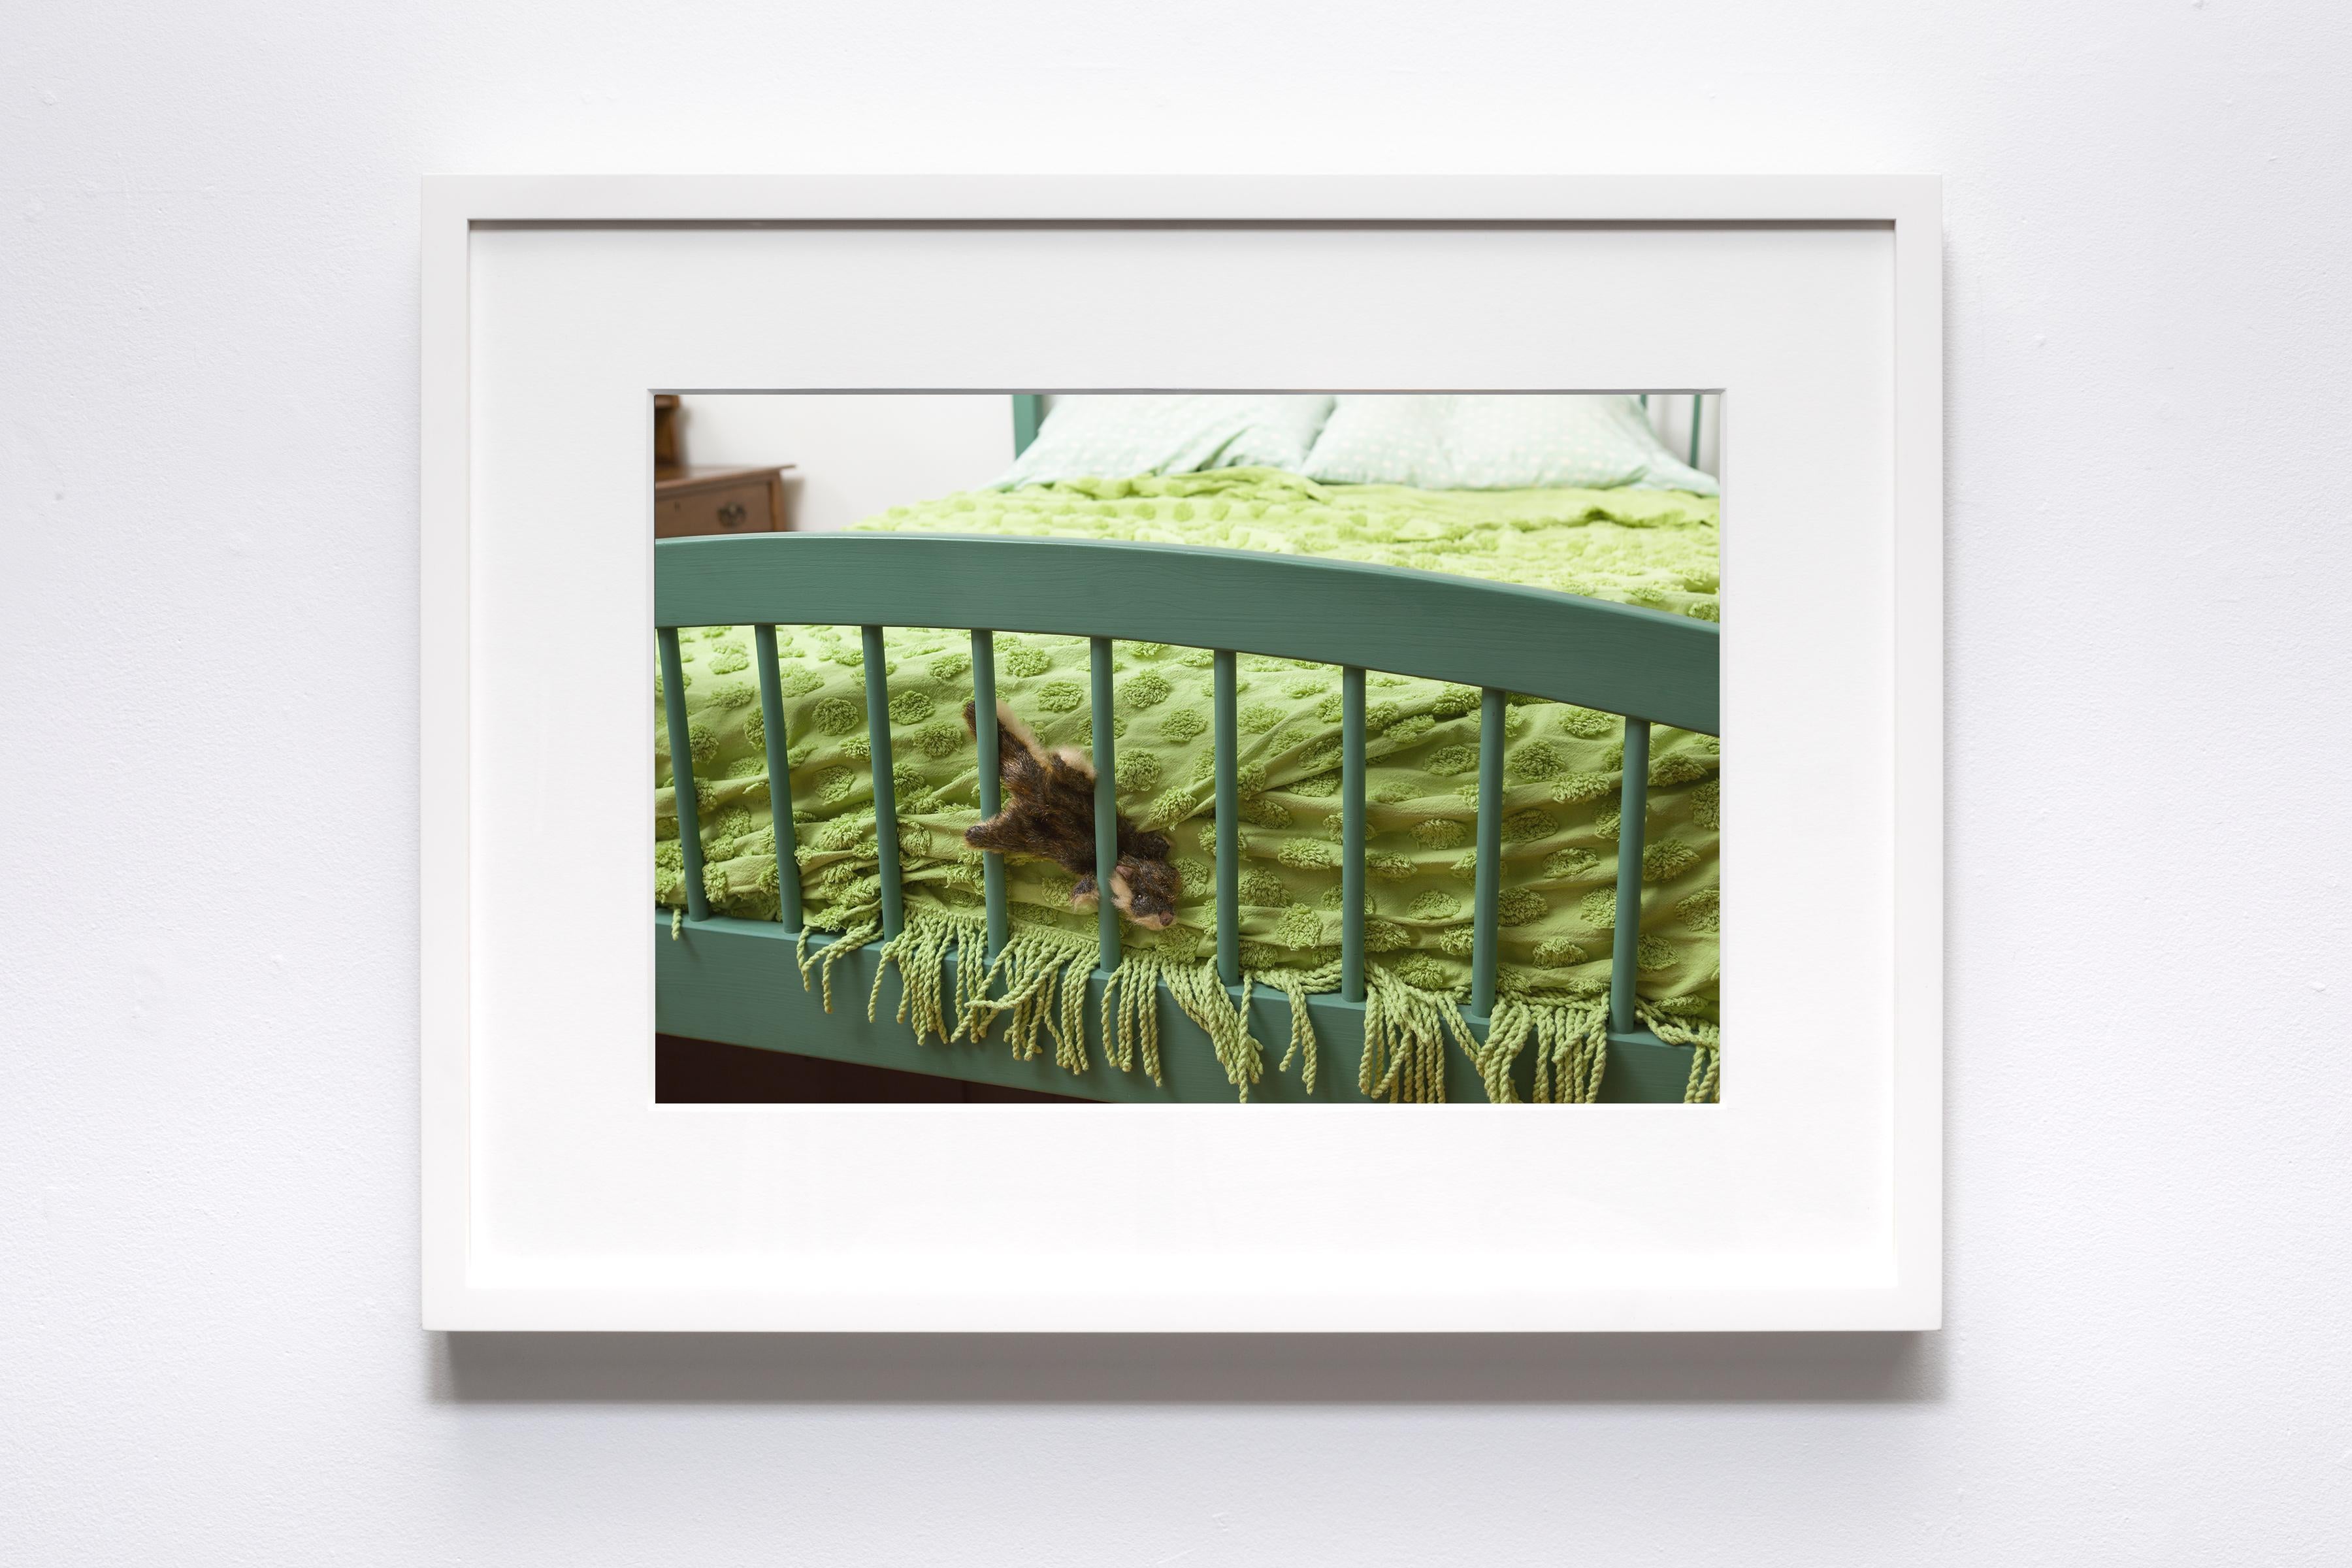 Morbidity & Mortality: Chipmunk Humorvolles Foto eines Hundespielzeugs in Krimsszene (Zeitgenössisch), Photograph, von Jeanette May